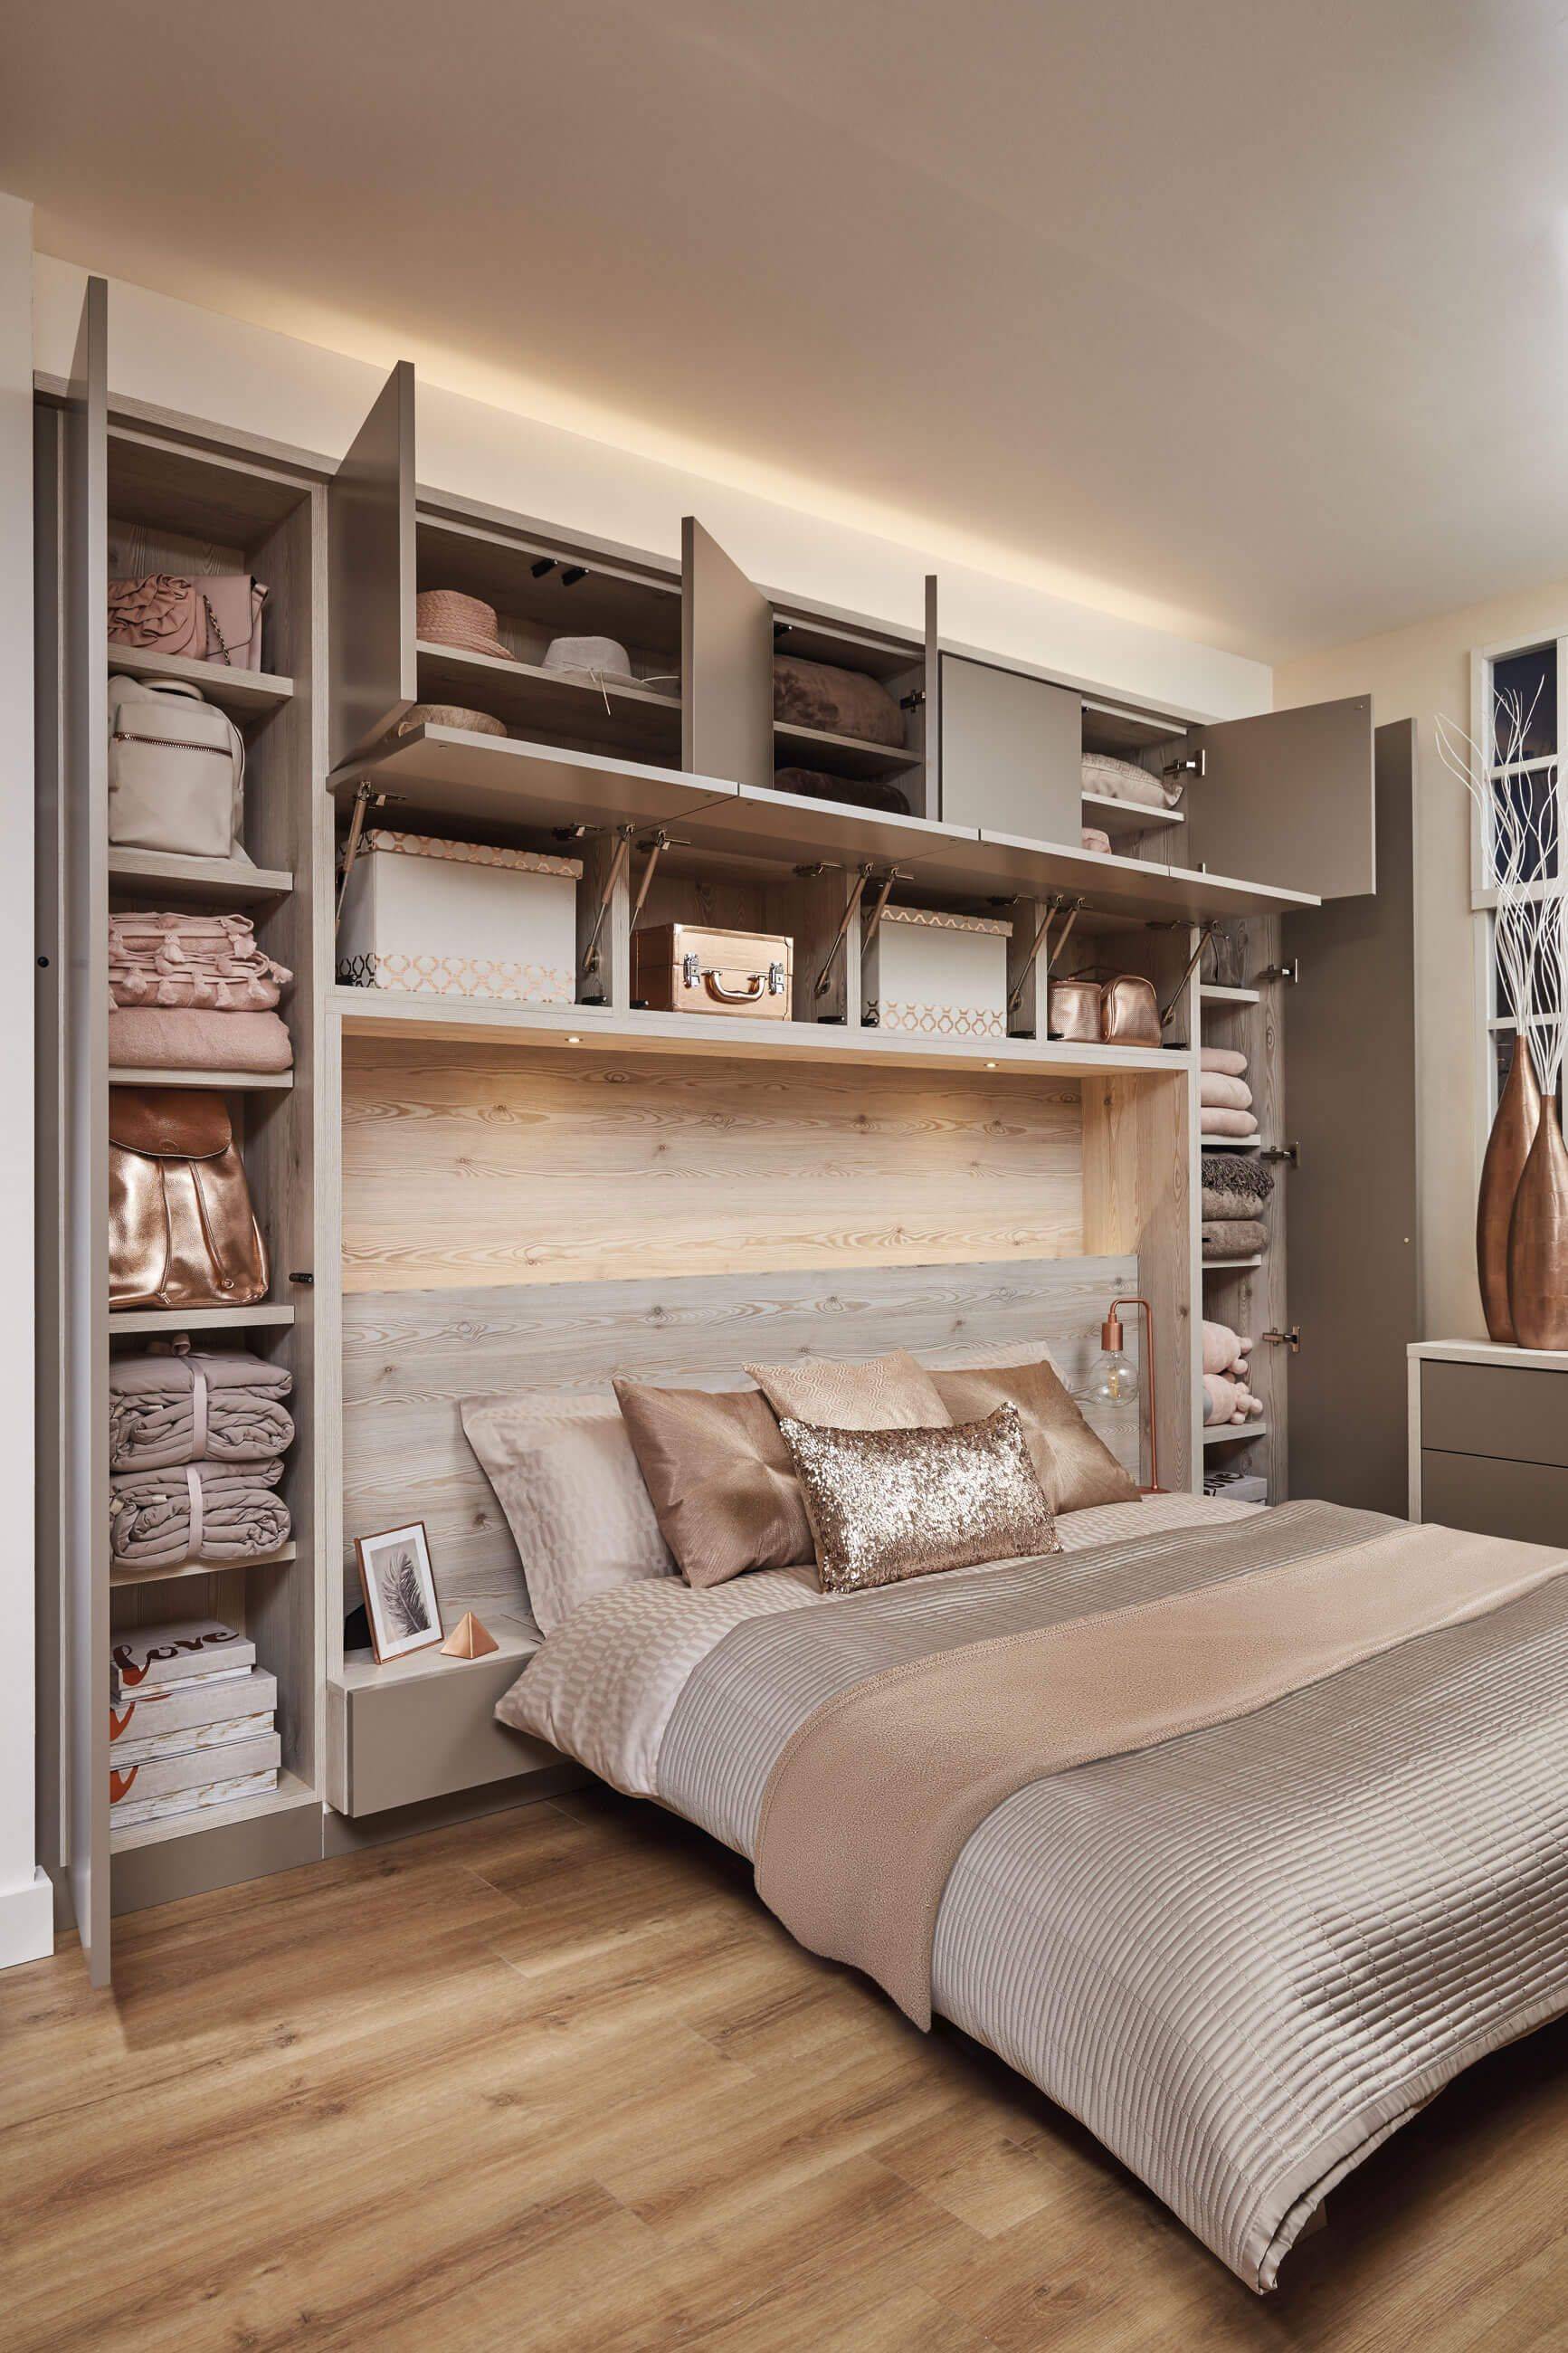 10 простых идей хранения вещей в маленькой спальне: новости, спальня, вещи, хранение, способы, советы дизайнера, дизайн и интерьер